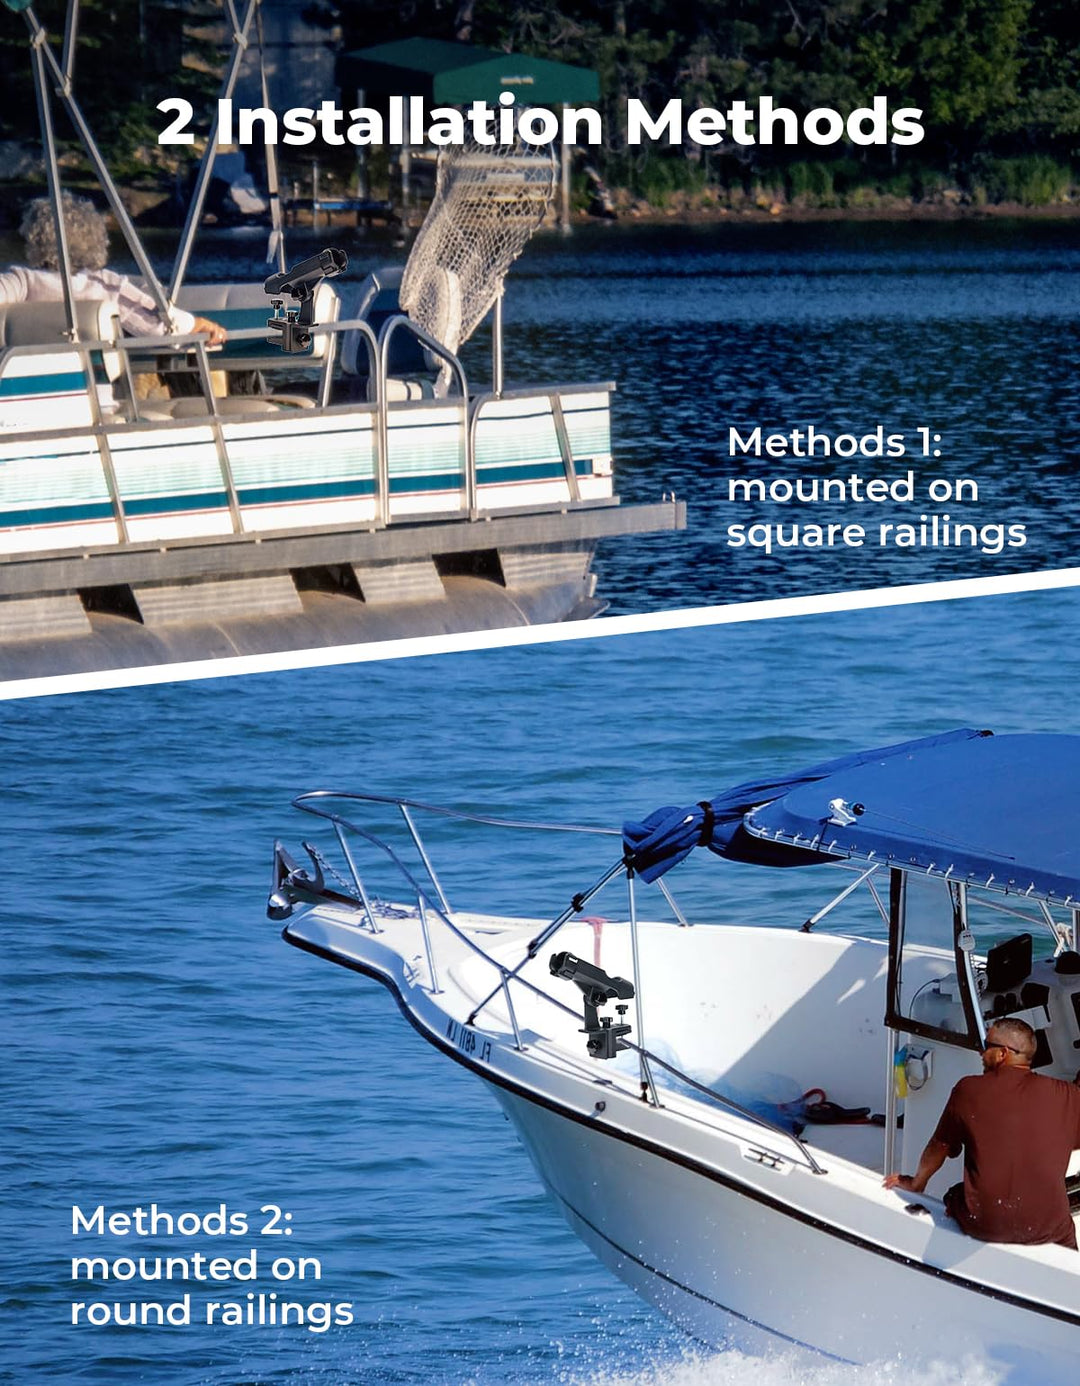 Adjustable Fishing Rod Holder for Boat, Kayak, pontoon boat with 3 Mount